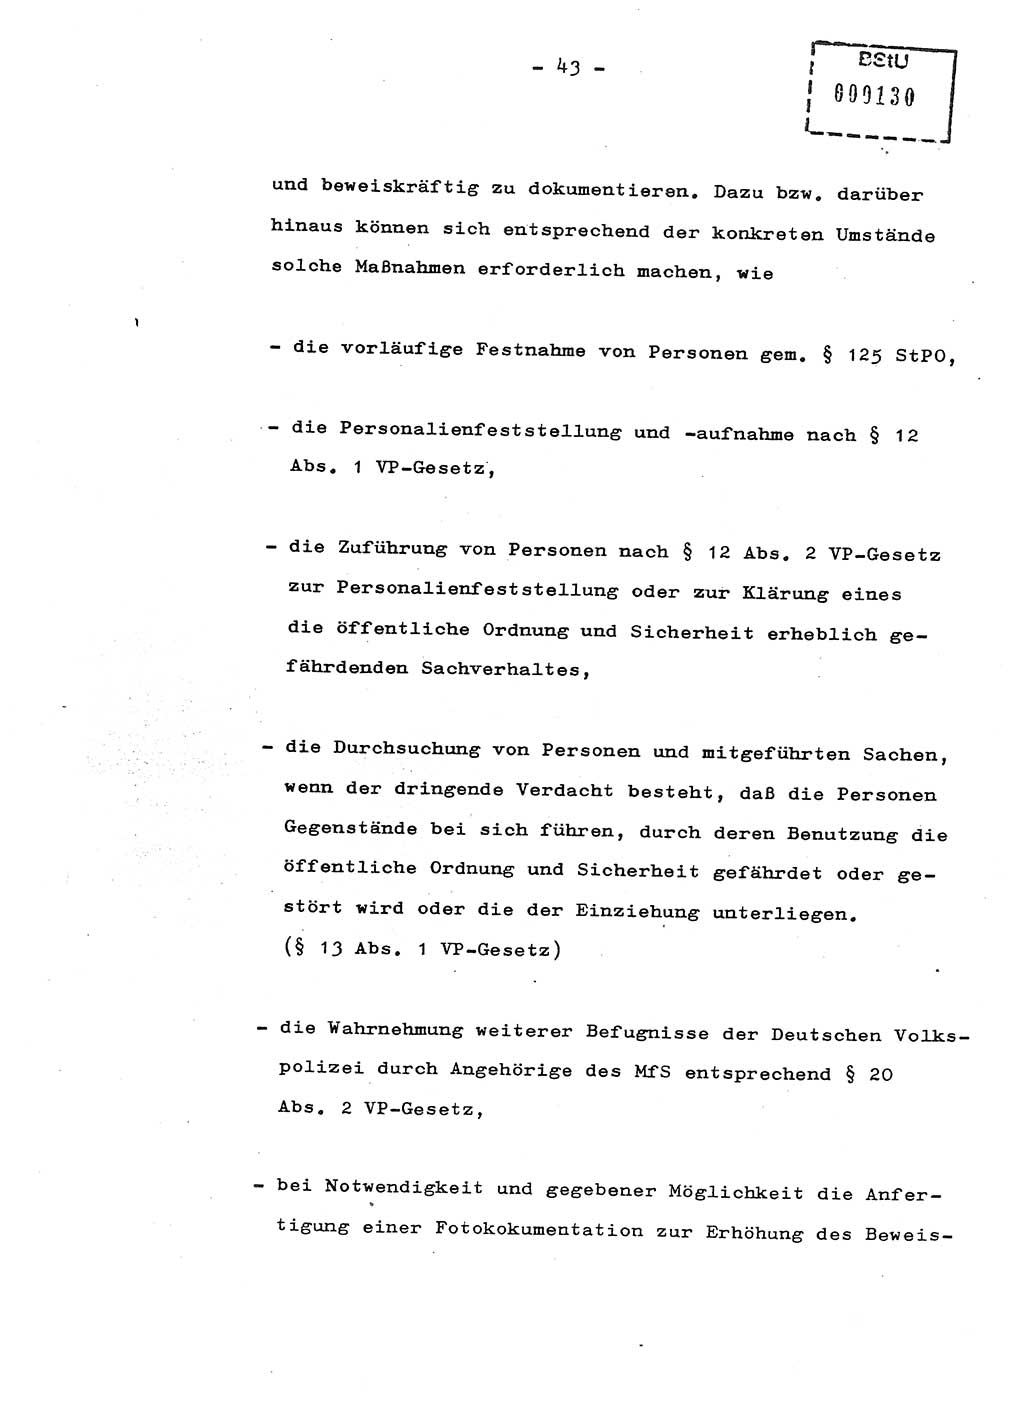 Schulungsmaterial Exemplar-Nr.: 8, Ministerium für Staatssicherheit [Deutsche Demokratische Republik (DDR)], Abteilung (Abt.) ⅩⅣ, Berlin 1987, Seite 43 (Sch.-Mat. Expl. 8 MfS DDR Abt. ⅩⅣ /87 1987, S. 43)